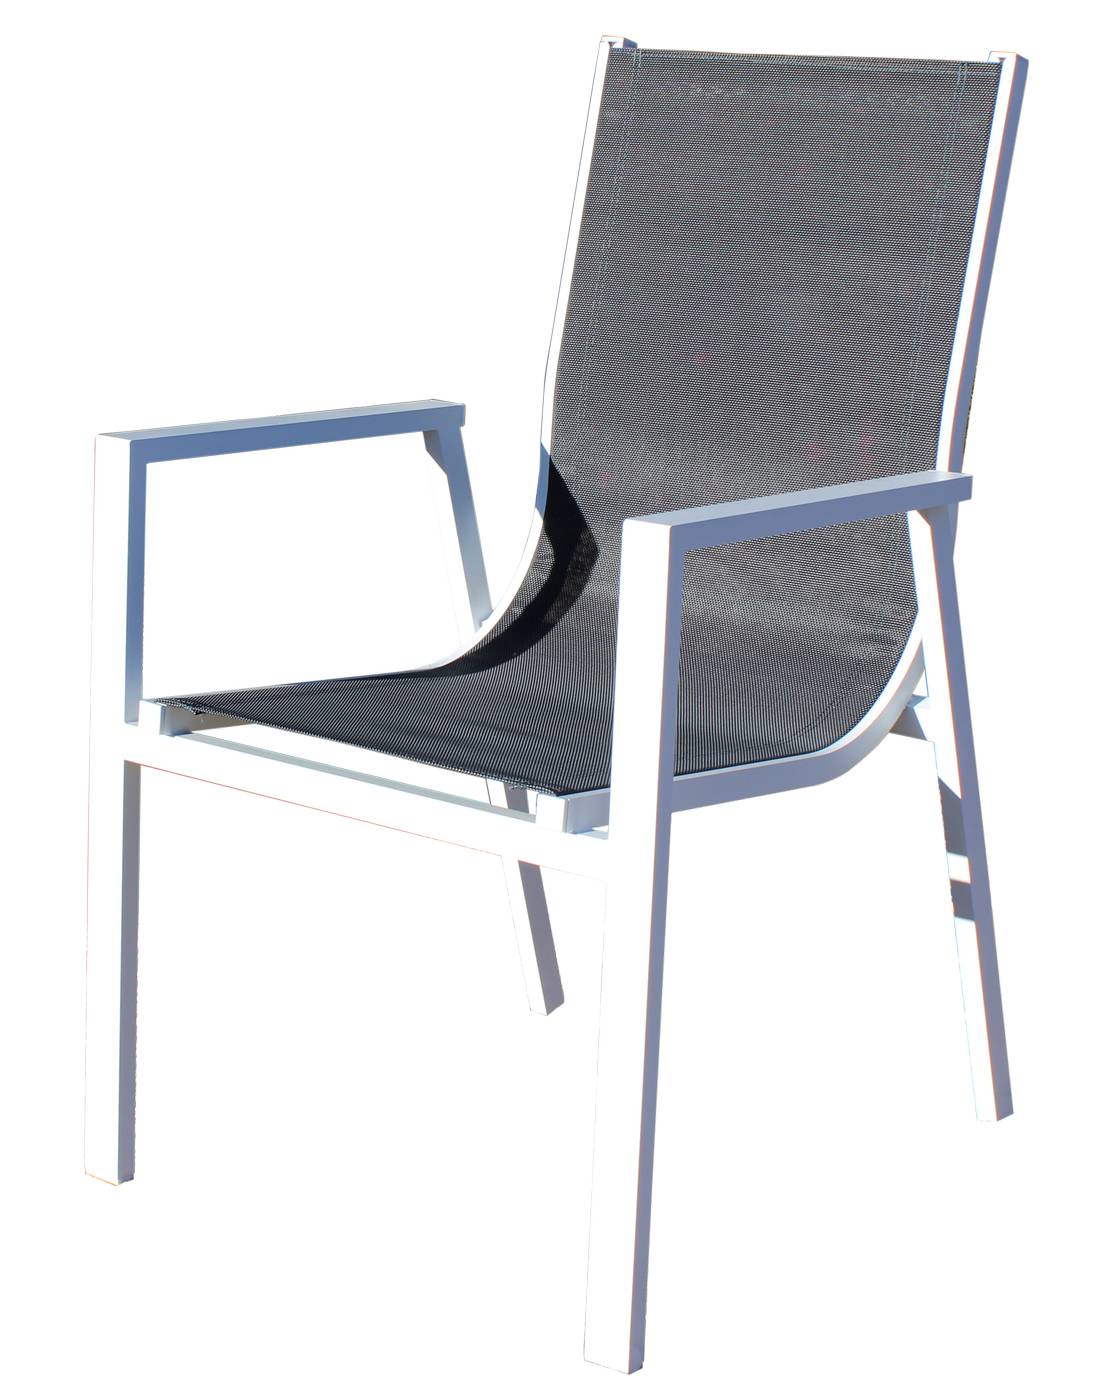 Conjunto Giglio100-Sidney - Conjunto aluminio: mesa redonda de 100 cm con tablero HPL + 4 sillones de alumino y textilen. Colores: blanco o antracita.